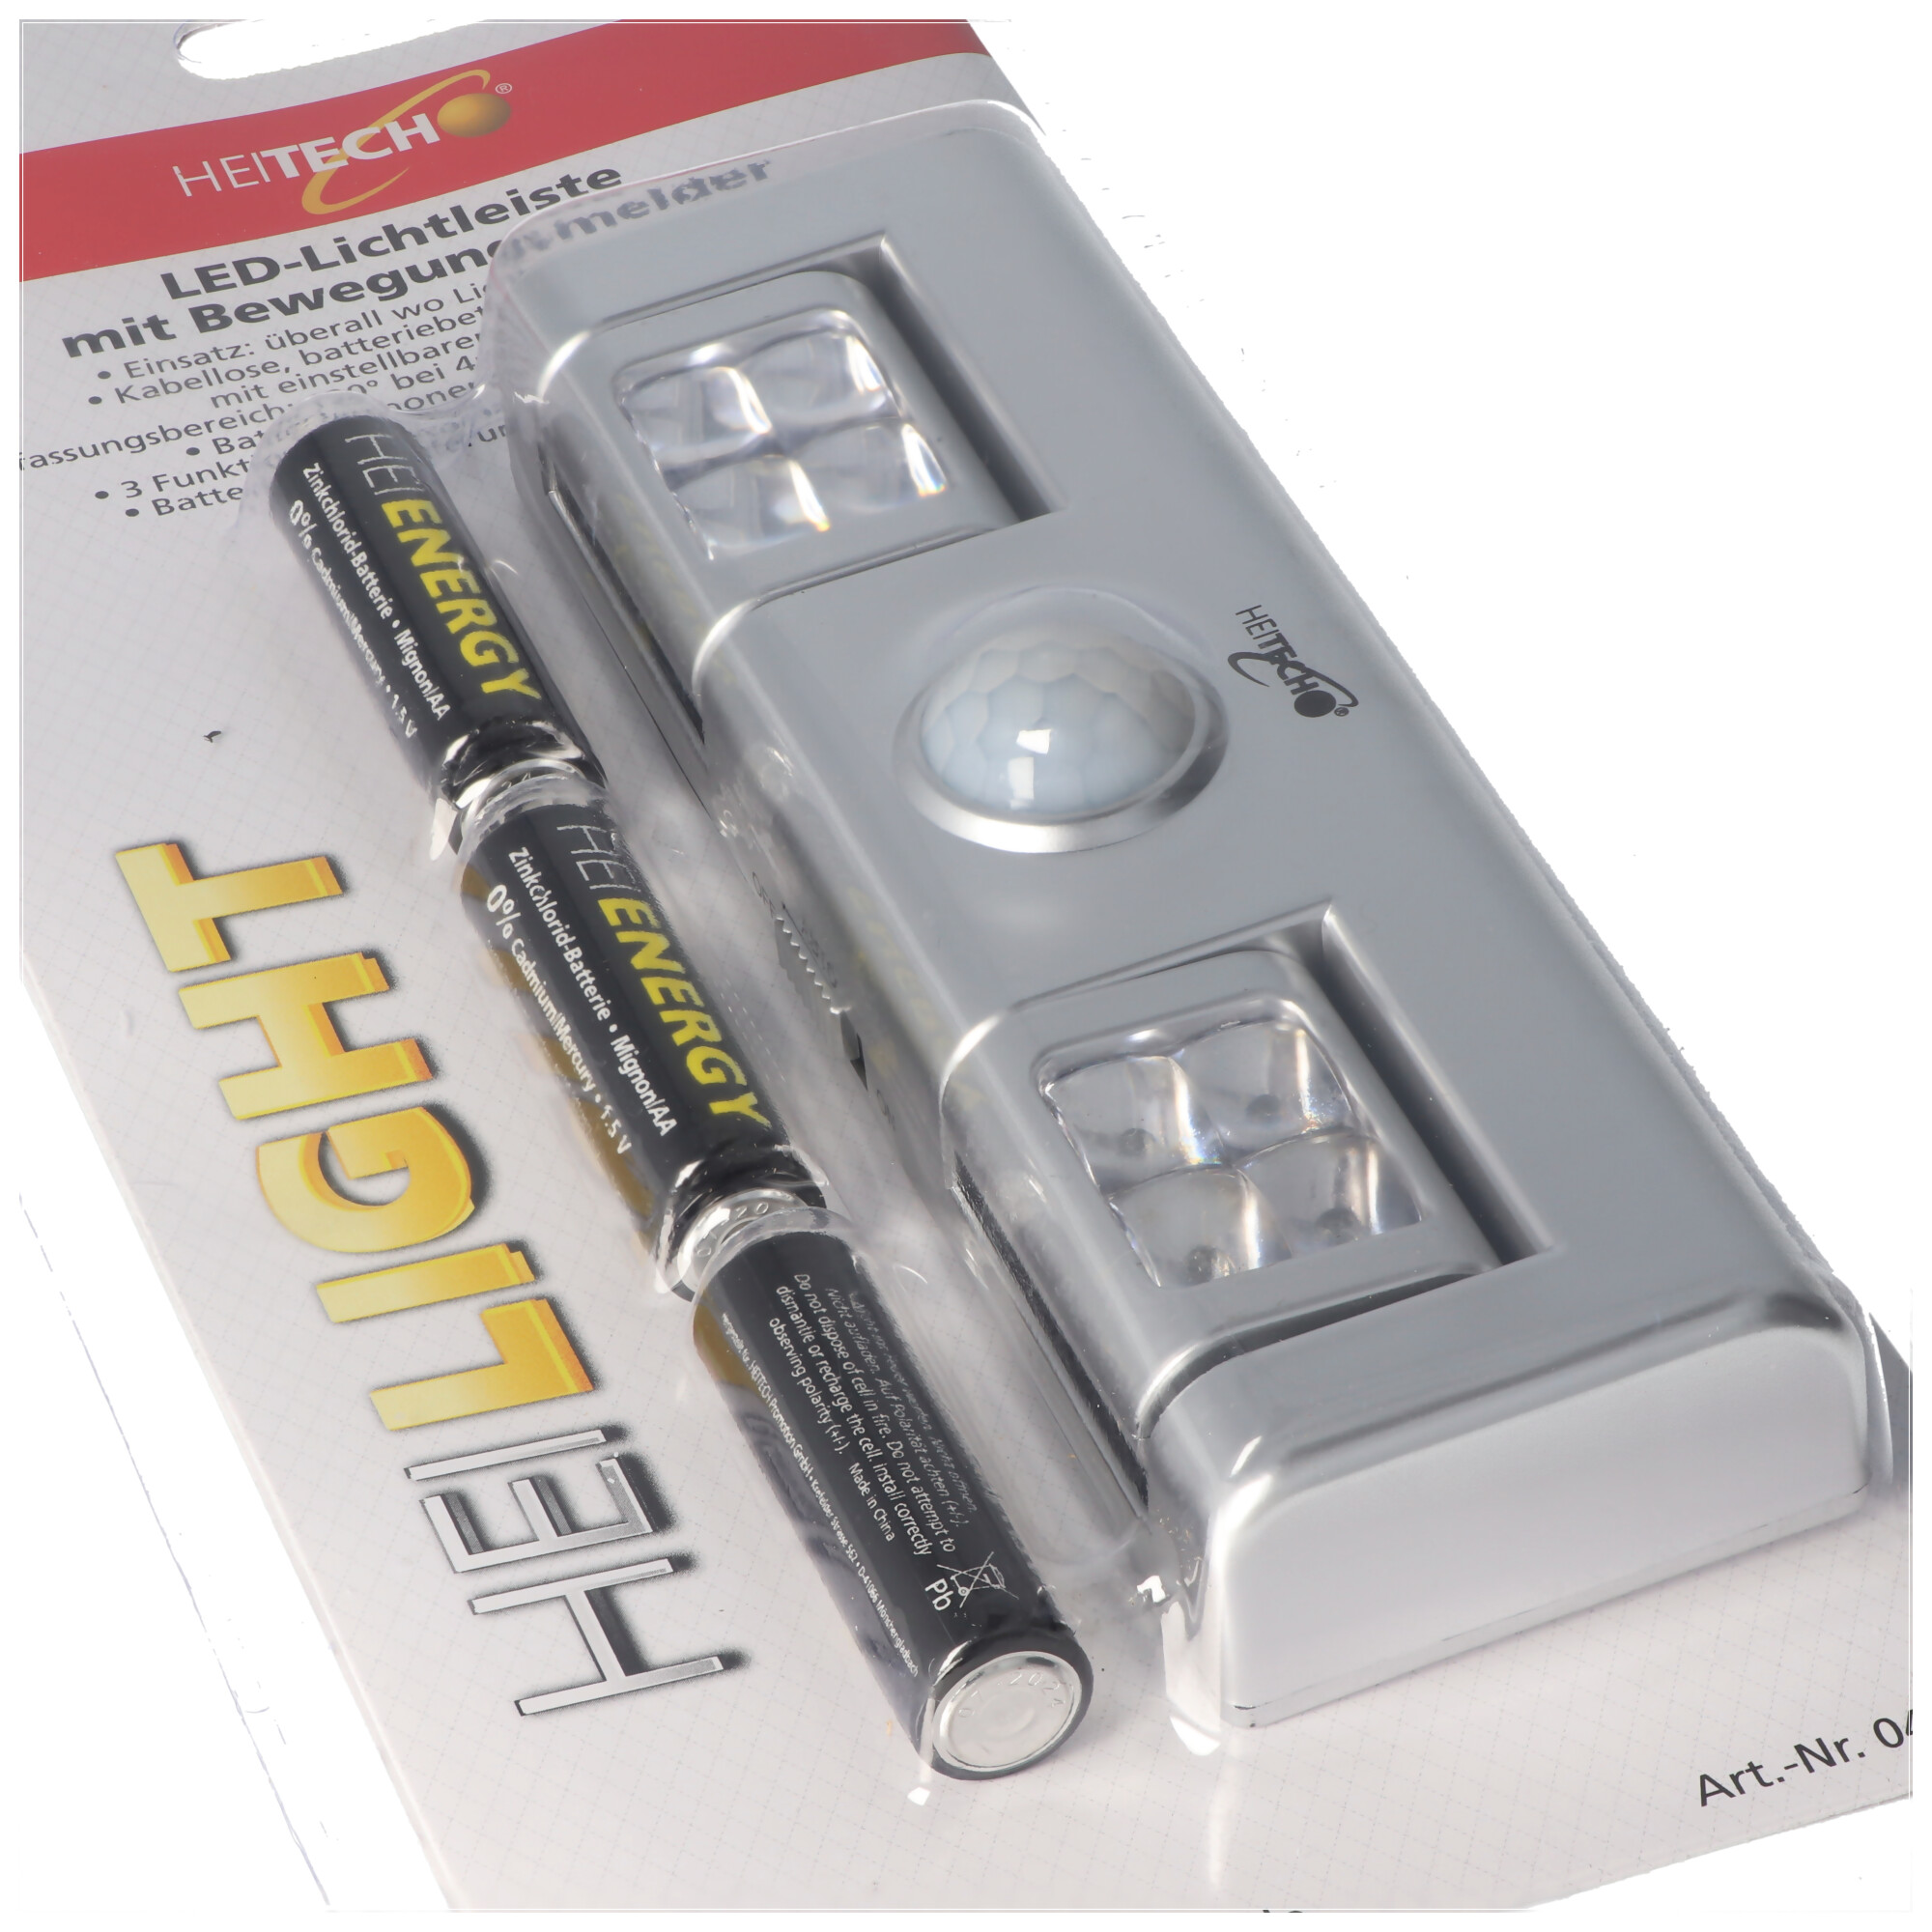 LED-Lichtleiste mit Bewegungsmelder, batteriebetriebene